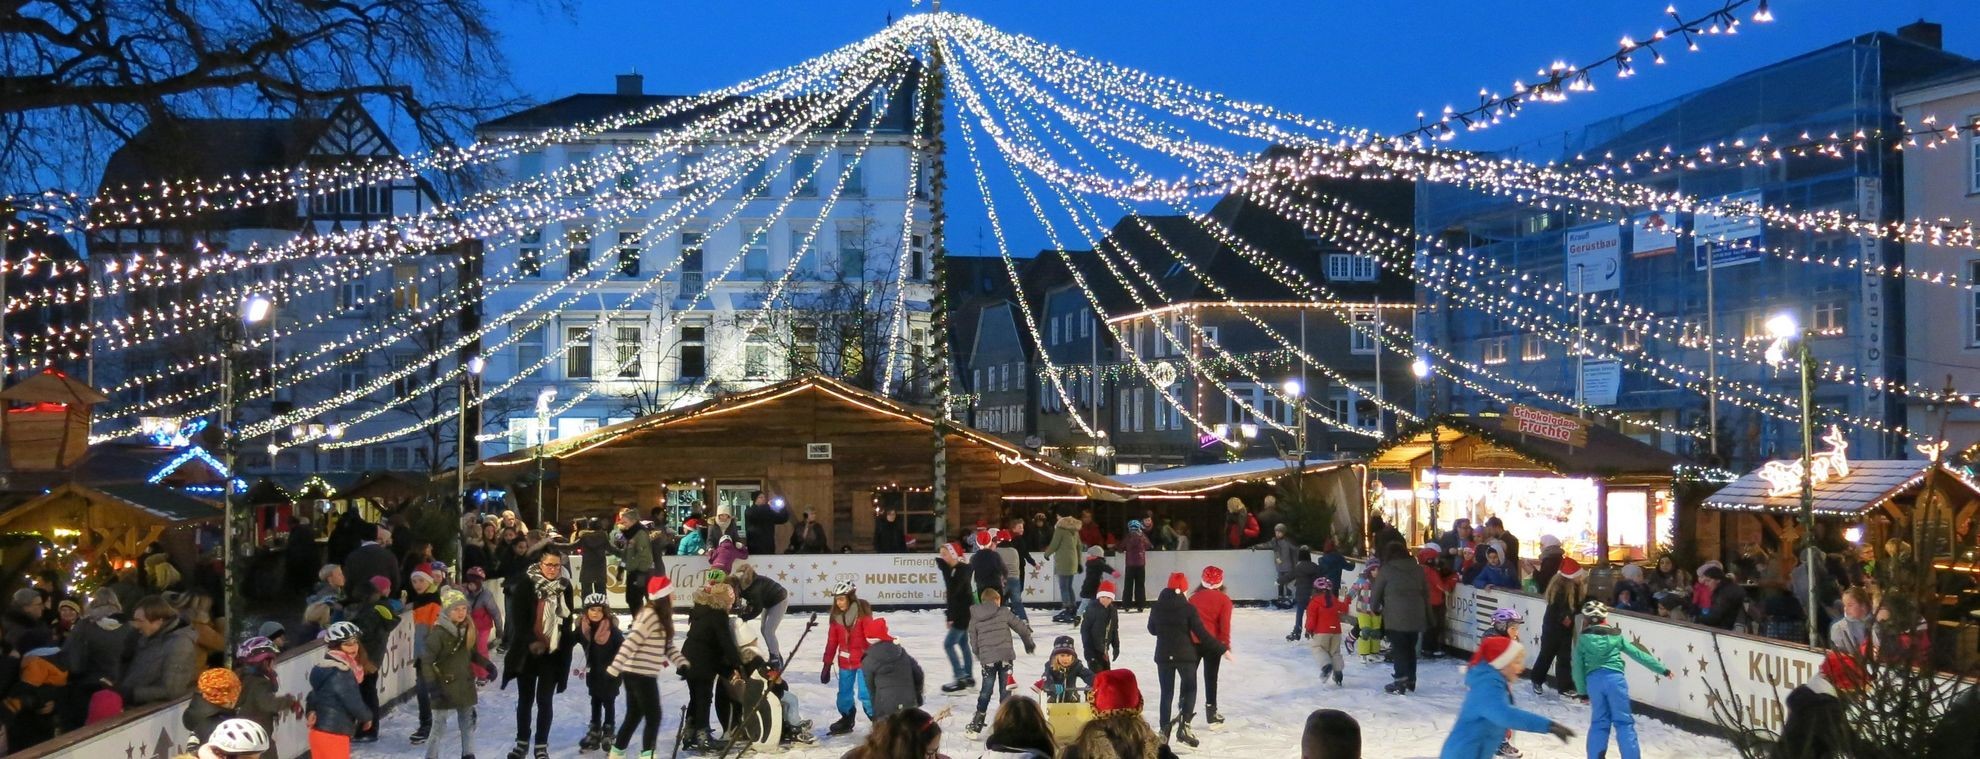 Die Eisbahn auf dem Weihnachtsmarkt in Lippstadt. von Stadt Lippstadt